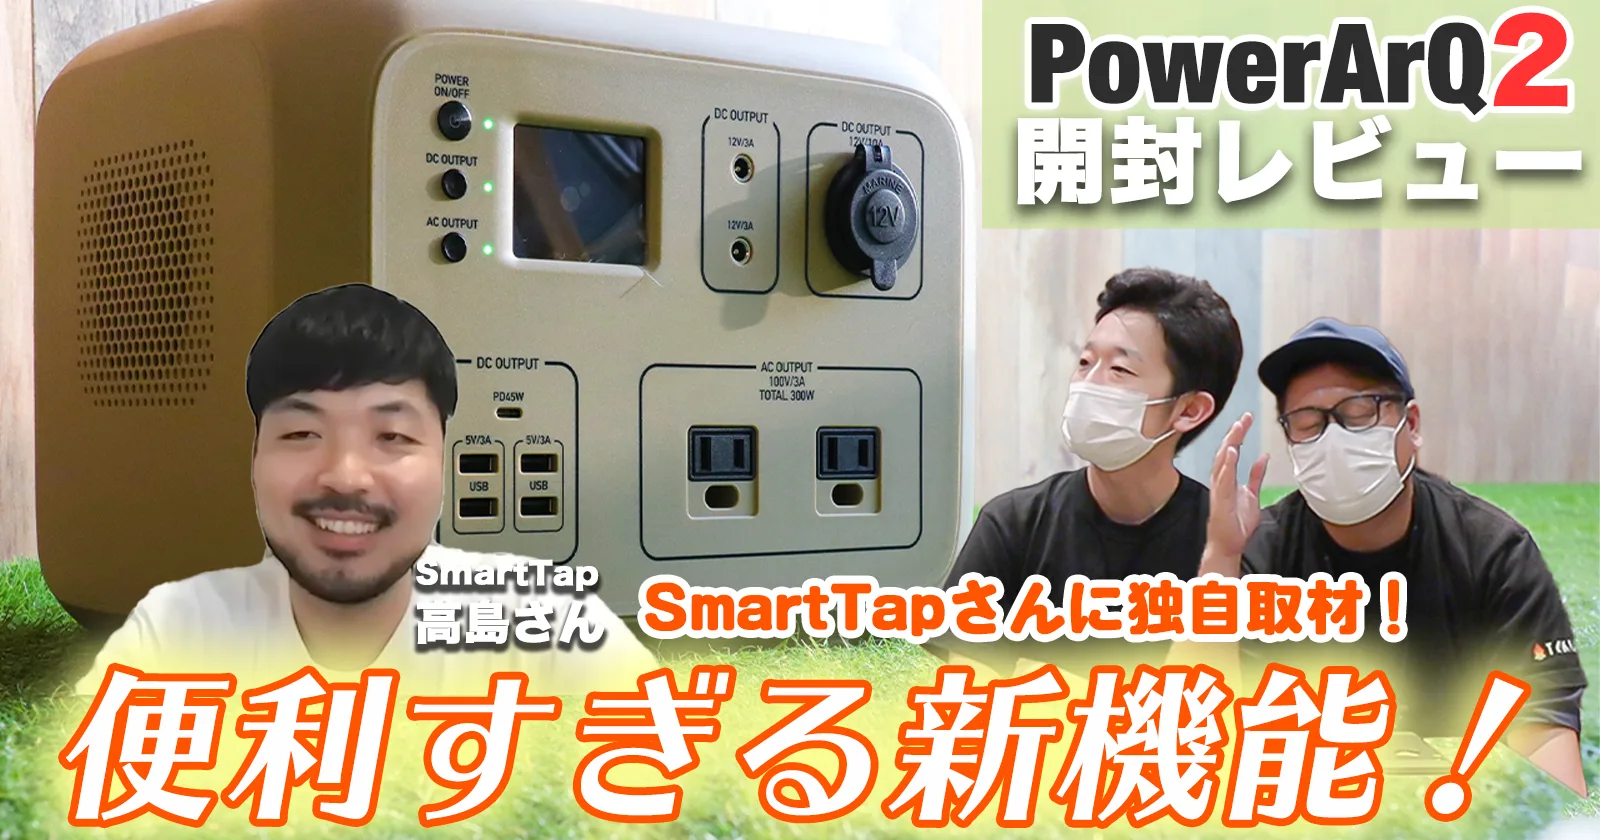 【値下げ品】 SmartTapポータブル電源PowerArQ2 ブラック バッテリー/充電器